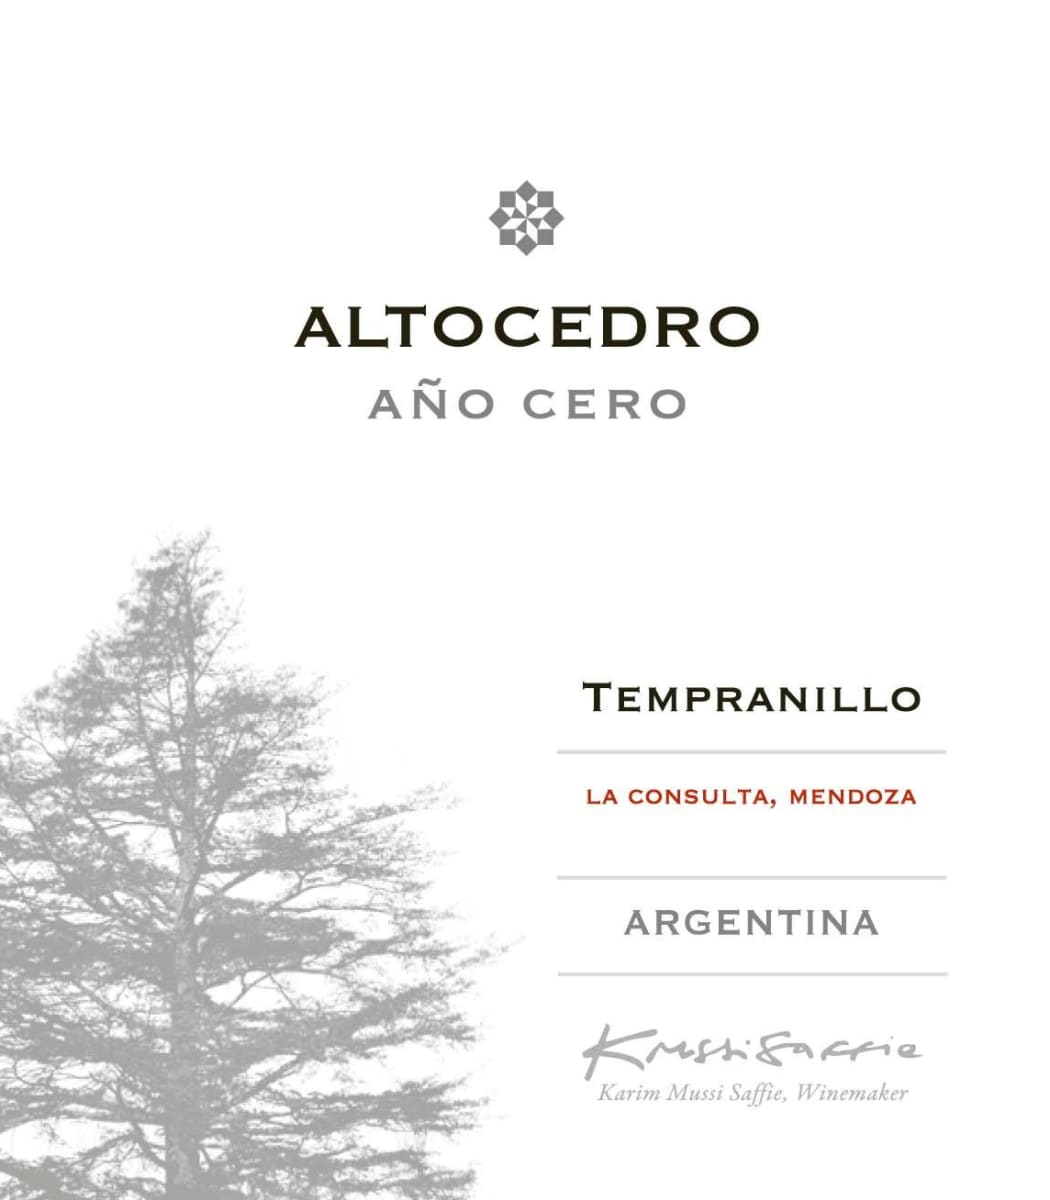 Altocedro Ano Cero Tempranillo 2013 Front Label